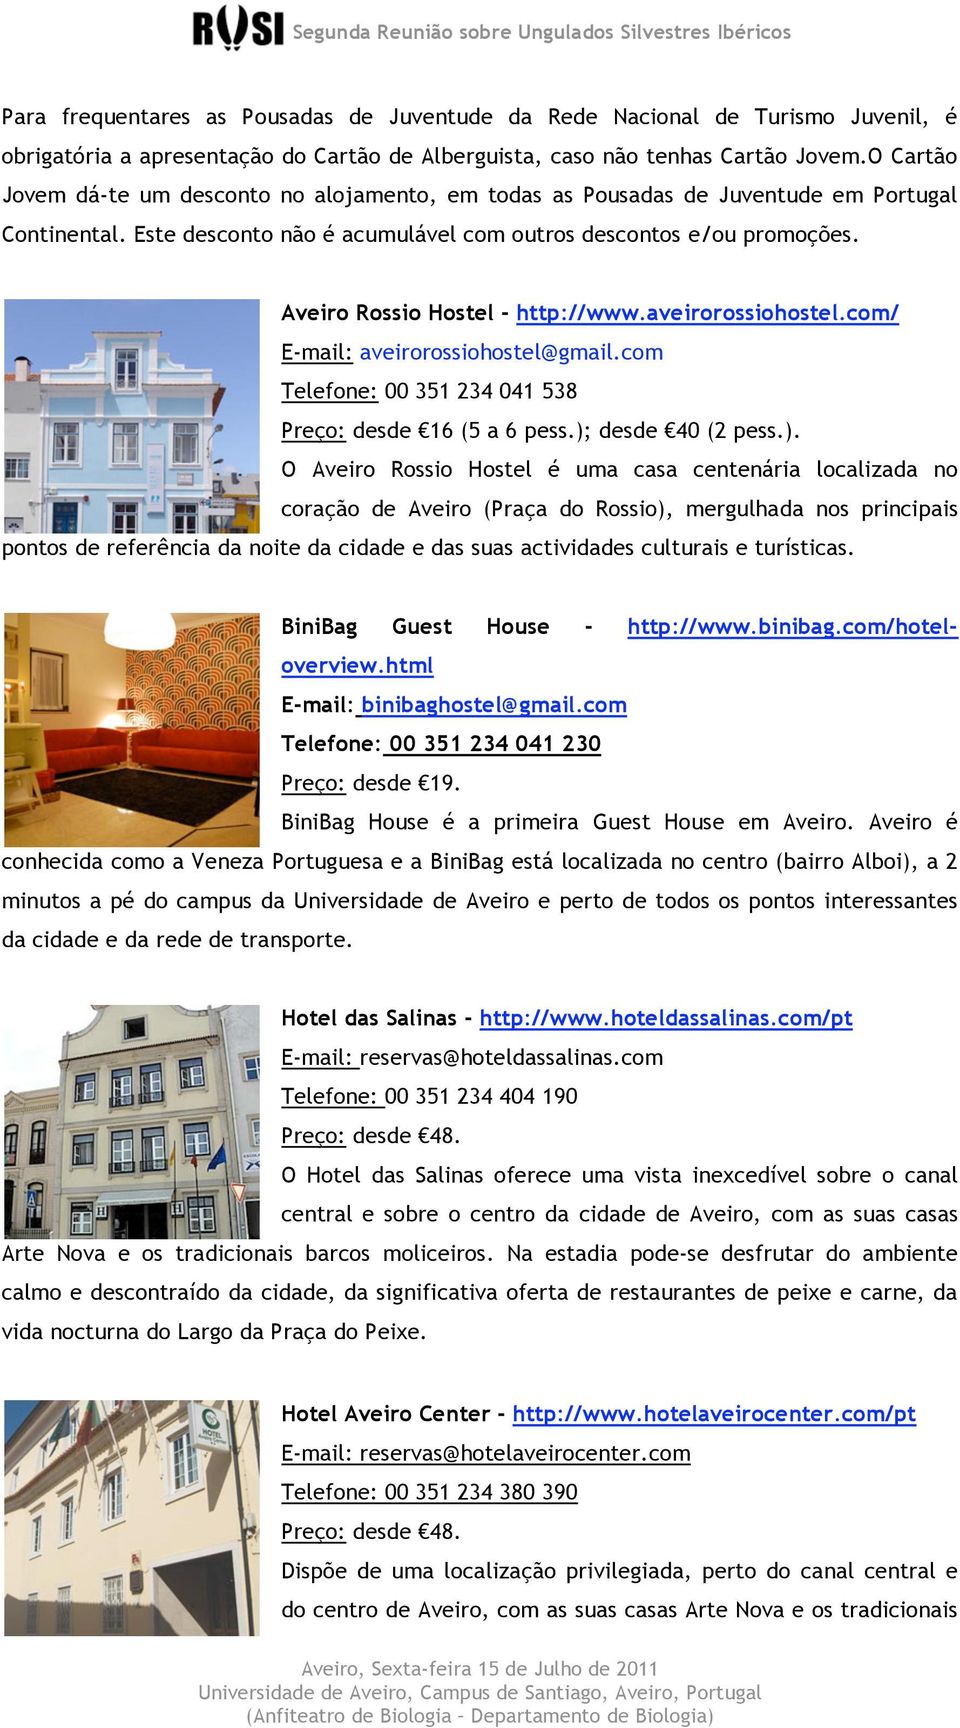 Aveiro Rossio Hostel - http://www.aveirorossiohostel.com/ E-mail: aveirorossiohostel@gmail.com Telefone: 00 351 234 041 538 Preço: desde 16 (5 a 6 pess.);